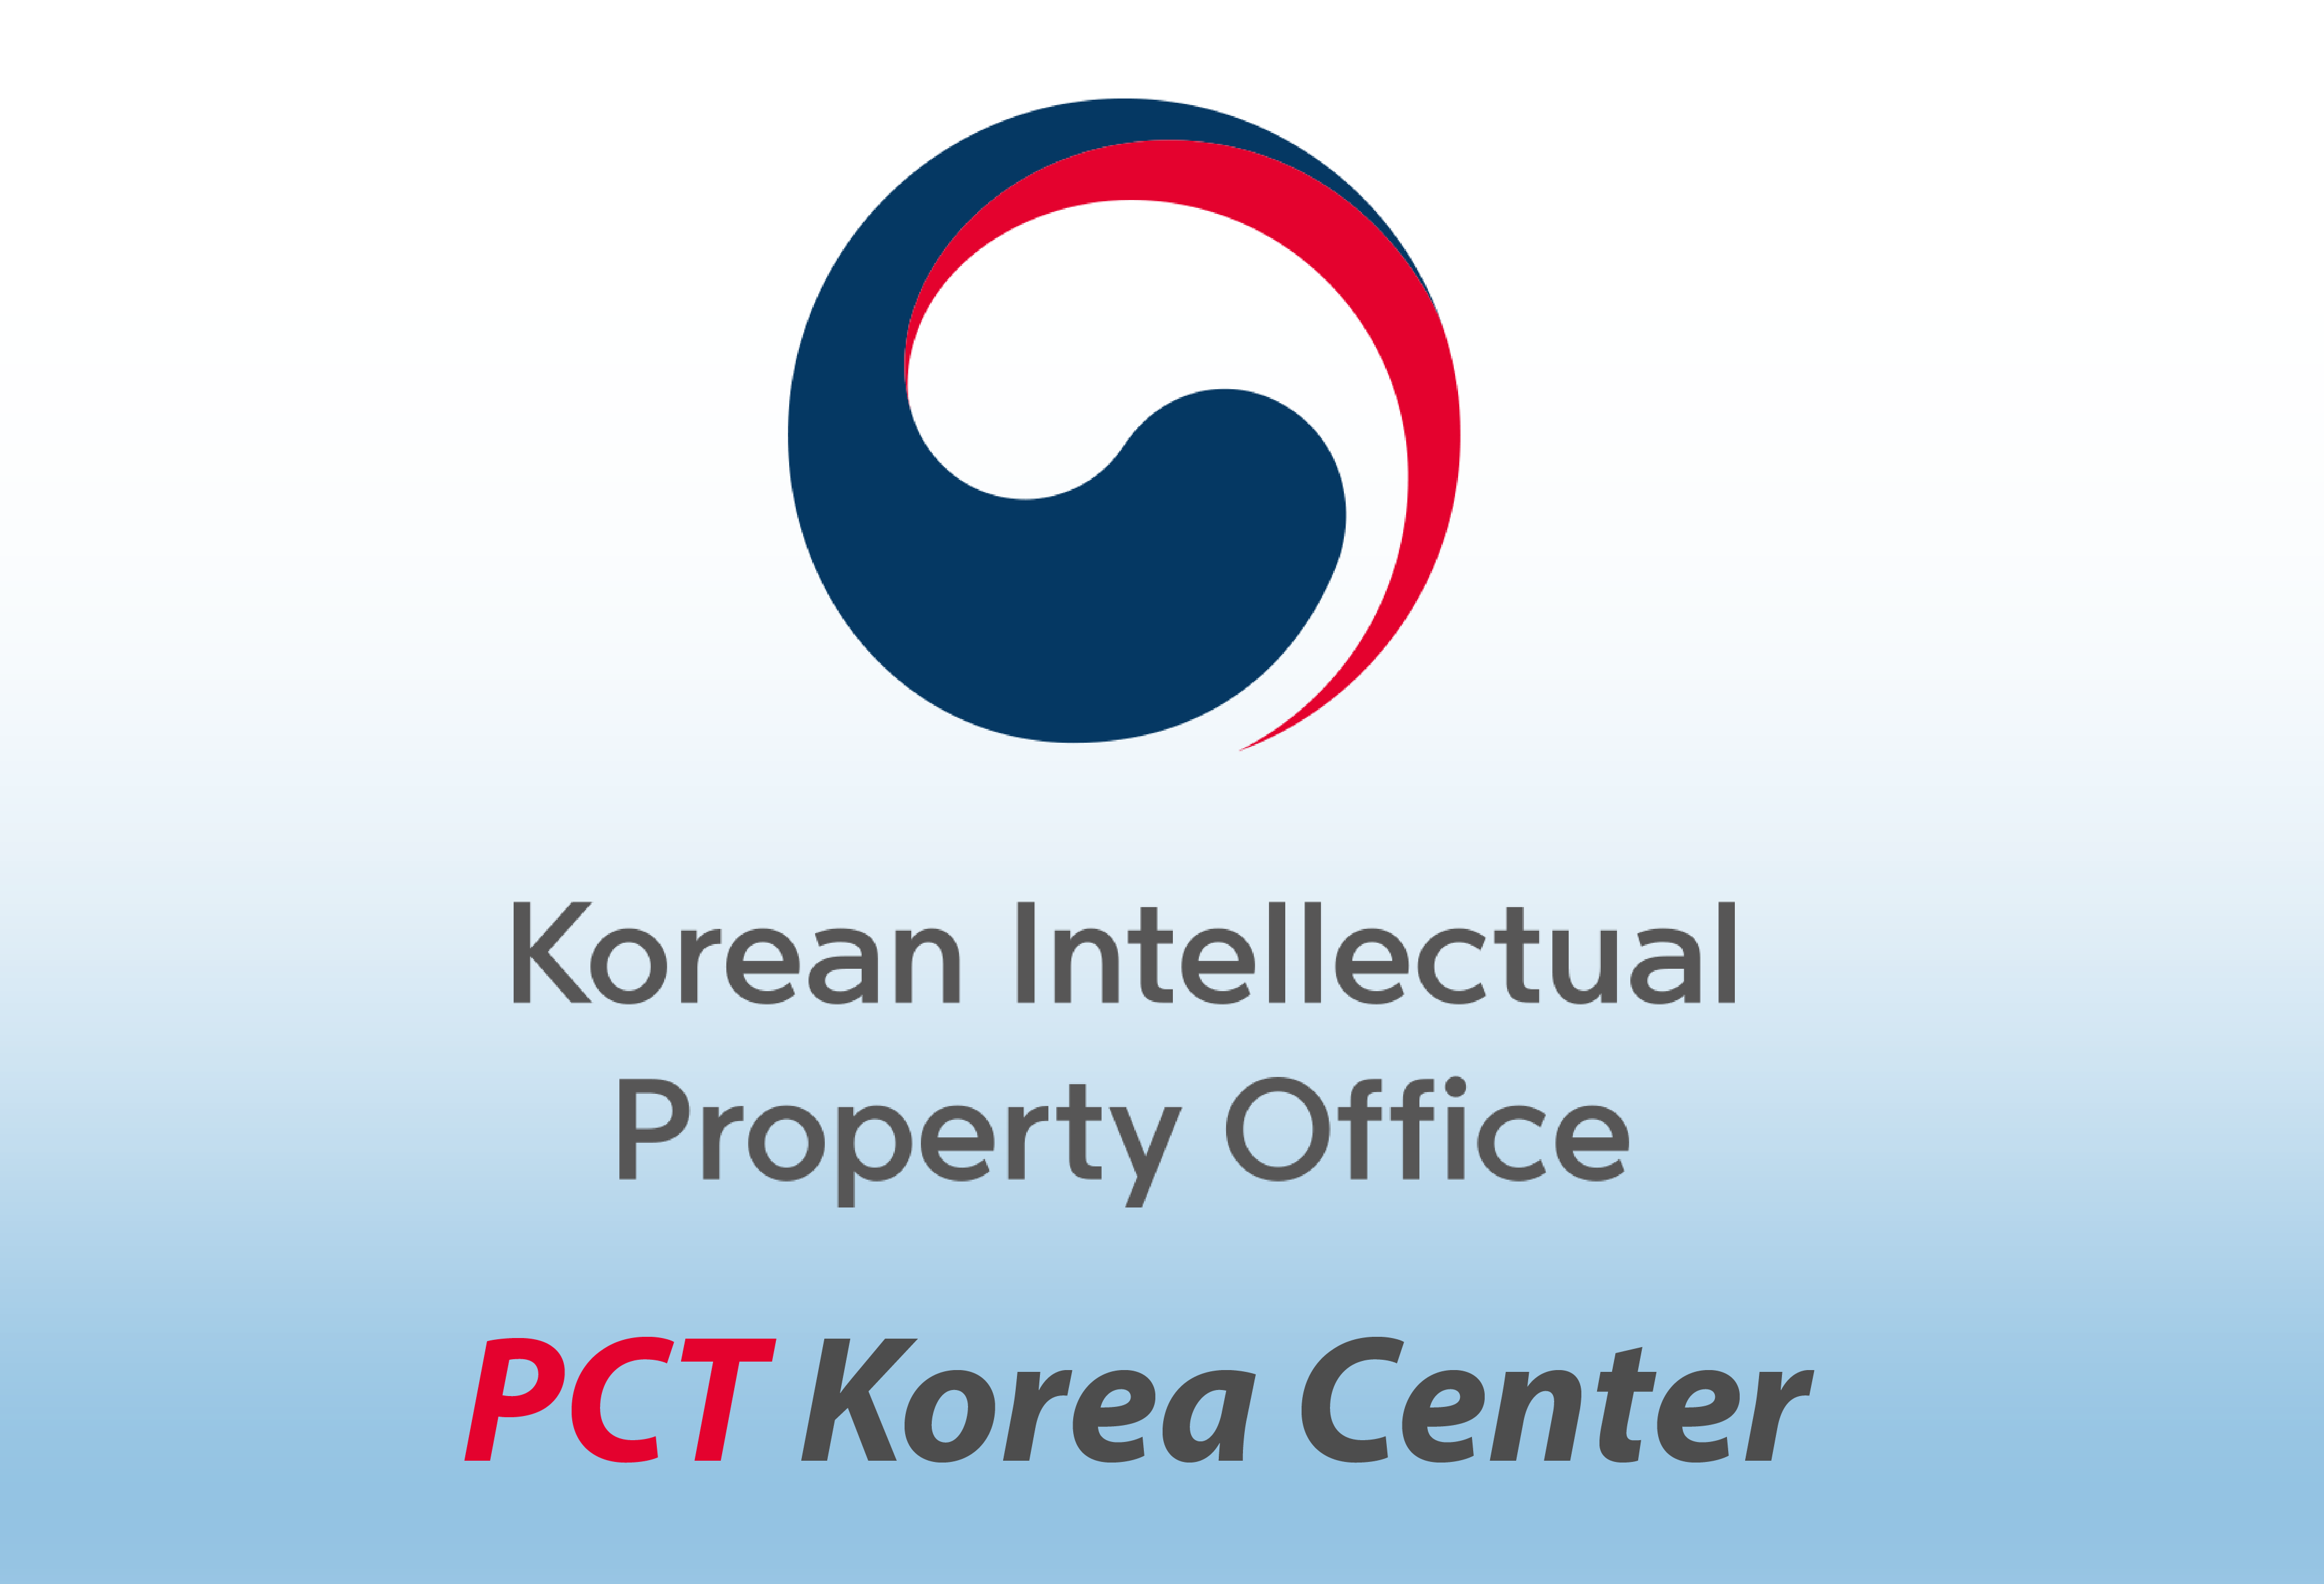 PCT Korea Center